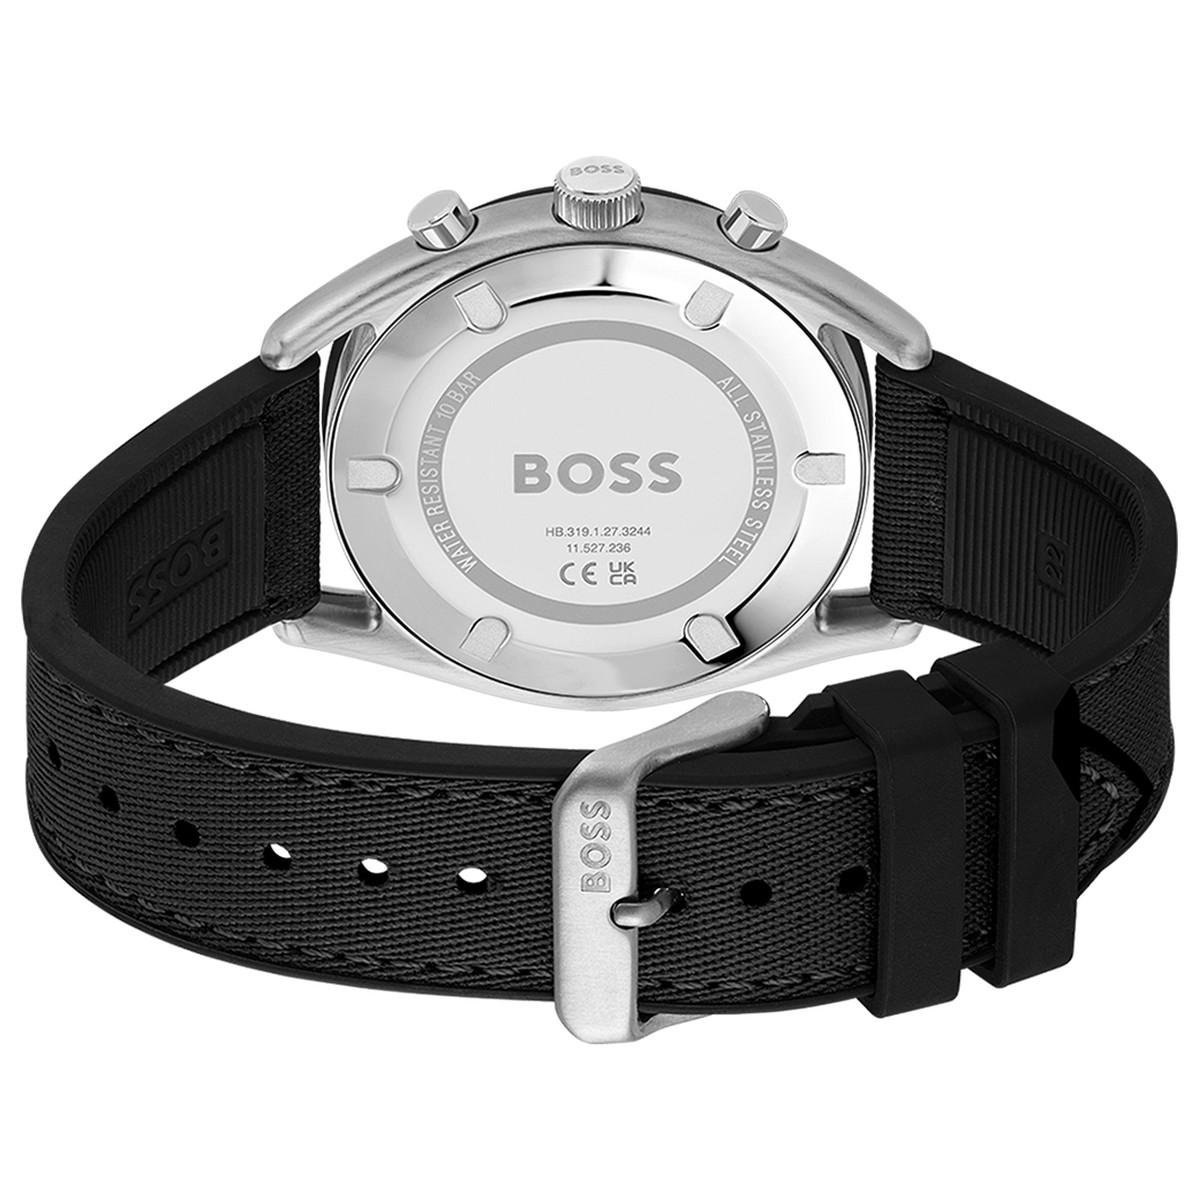 Montre BOSS sport lux homme chronographe, bracelet silicone noir - vue 3